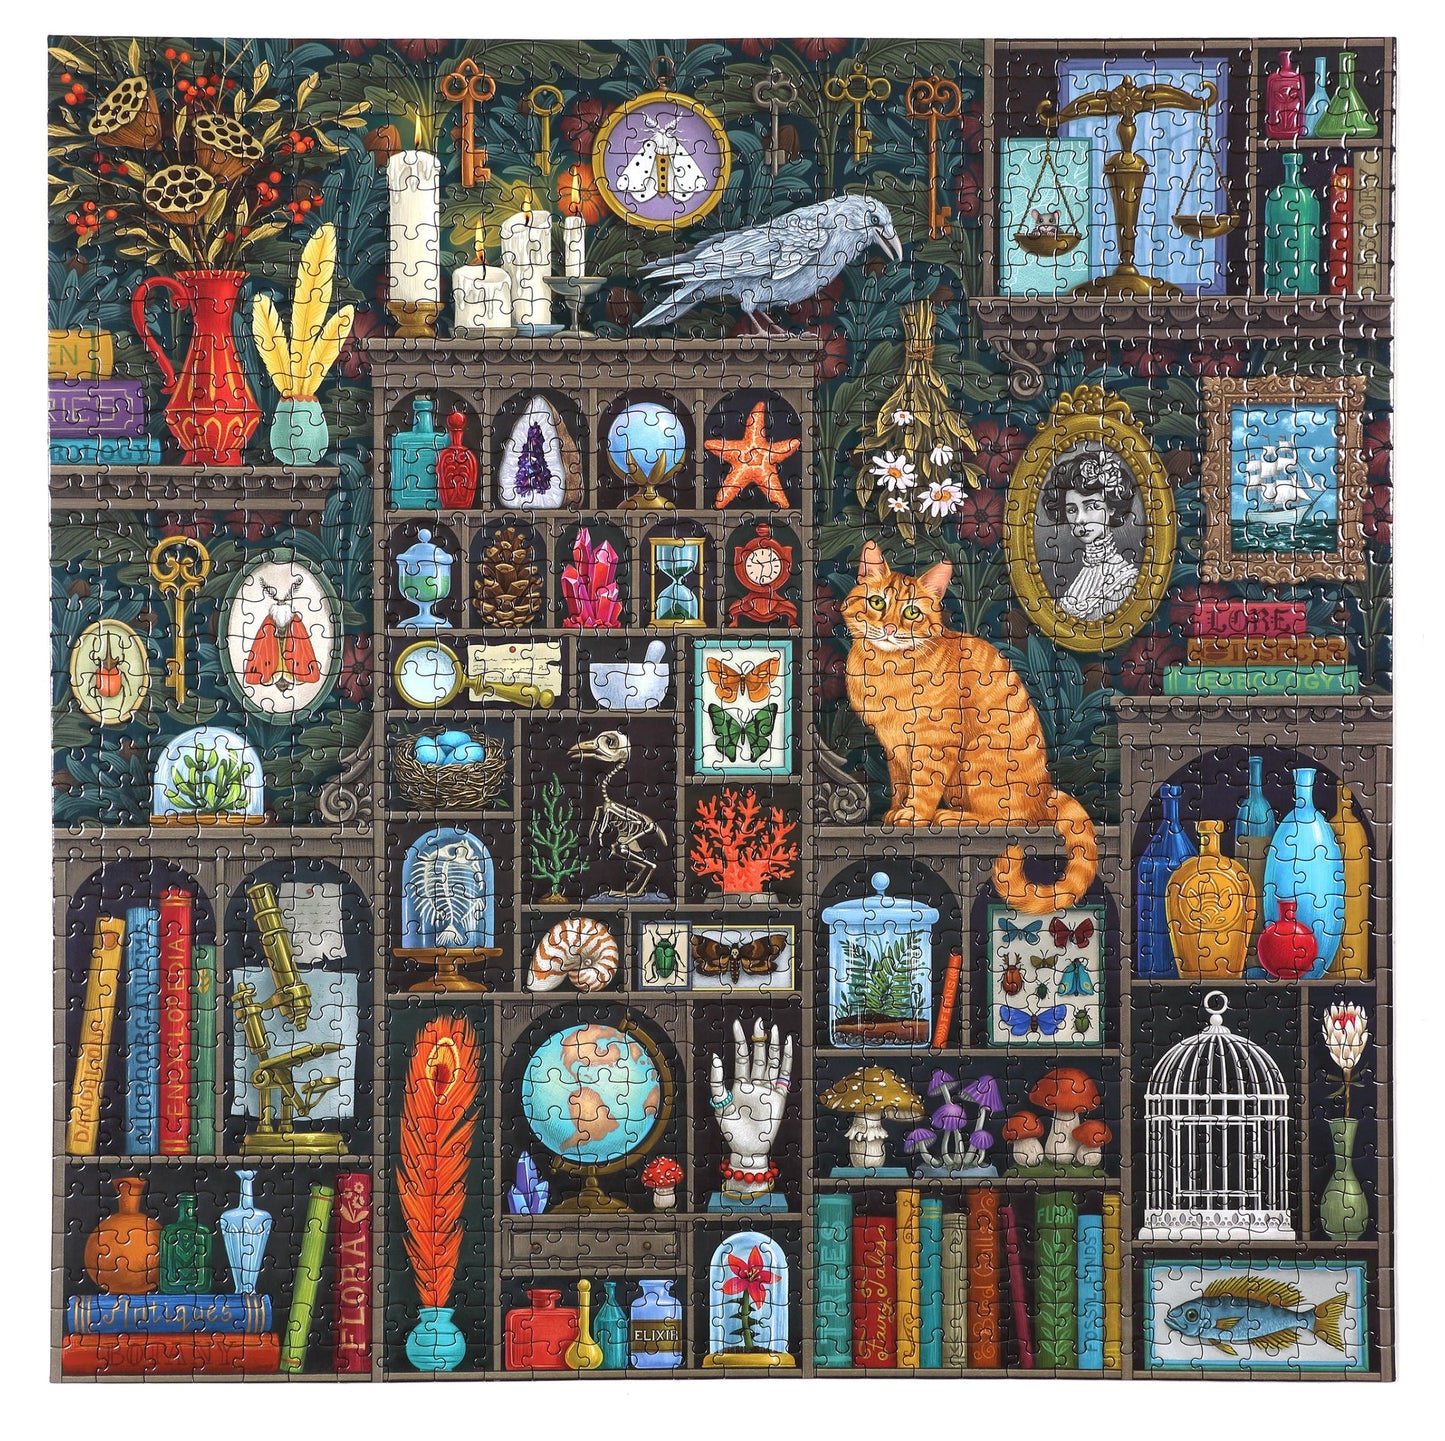 Alchemists Cabinet 1000 Piece Puzzle